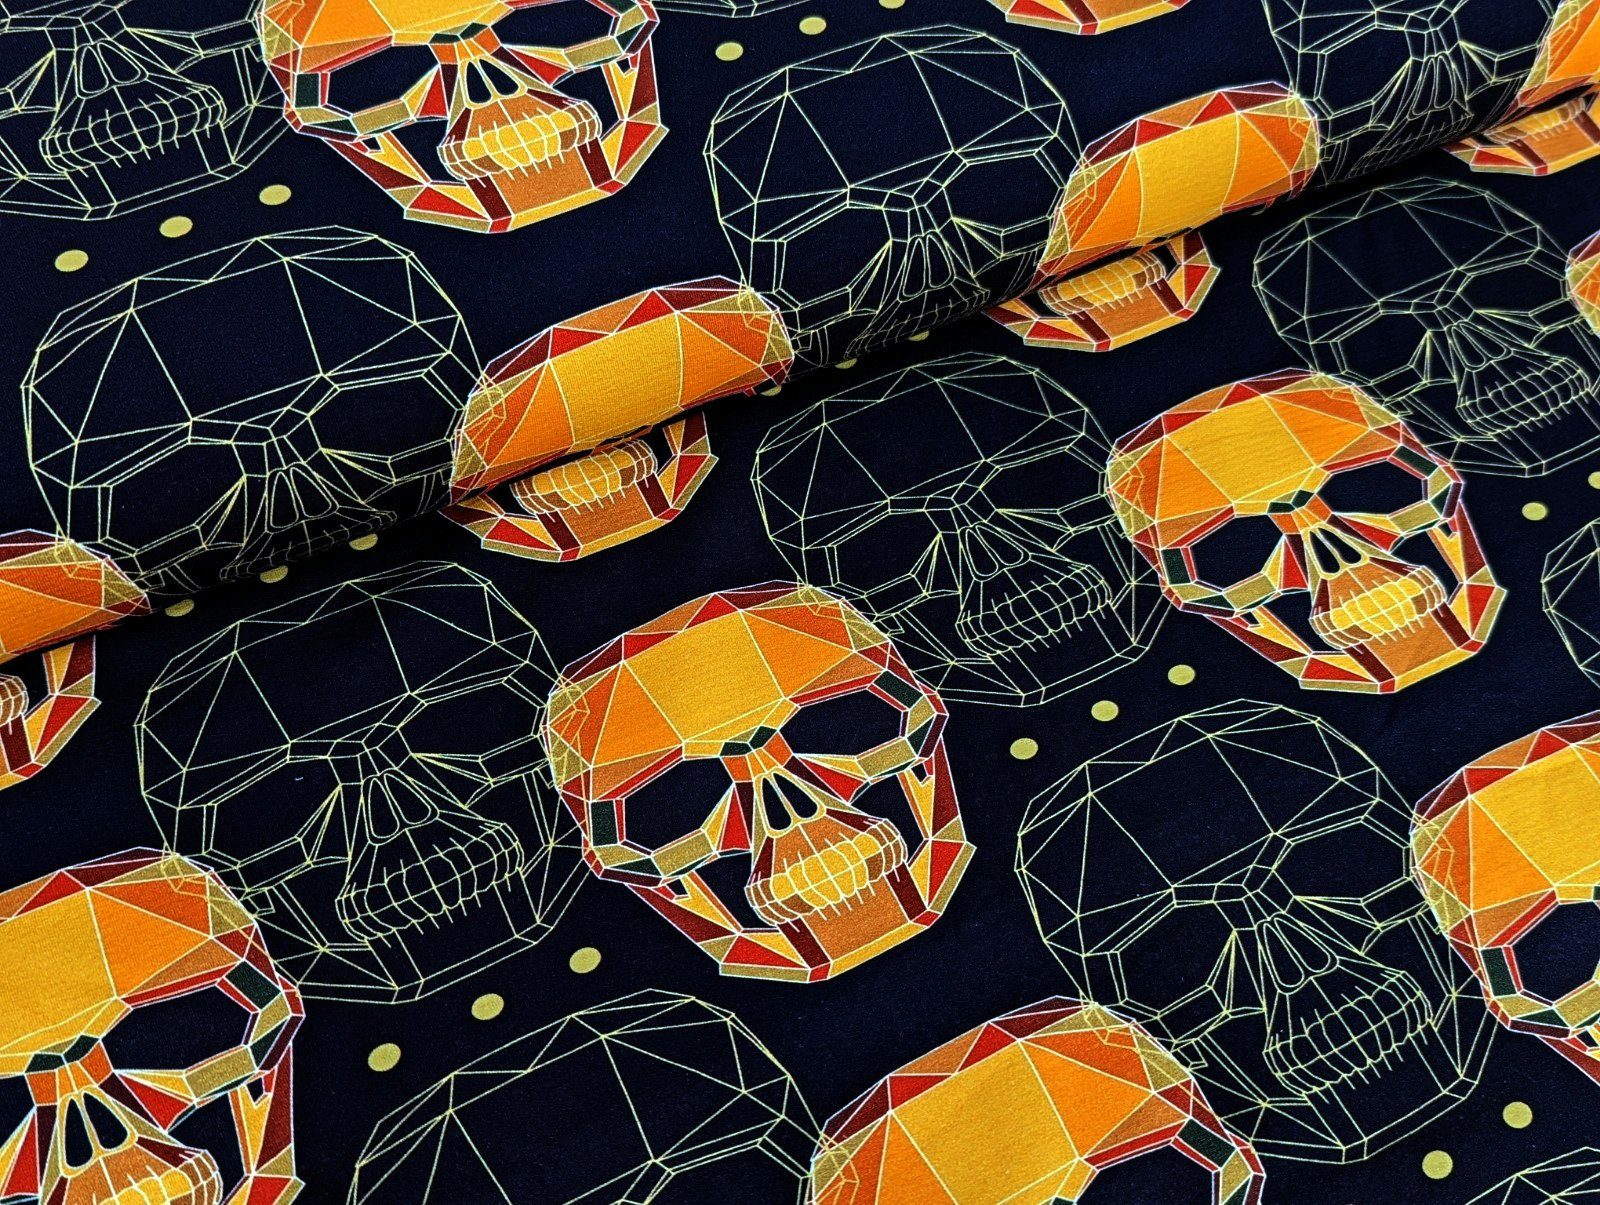 Corileo Stoff French Terry Graphic Skulls in Nachtblau / Orange Stoff Meterware Kleiderstoff